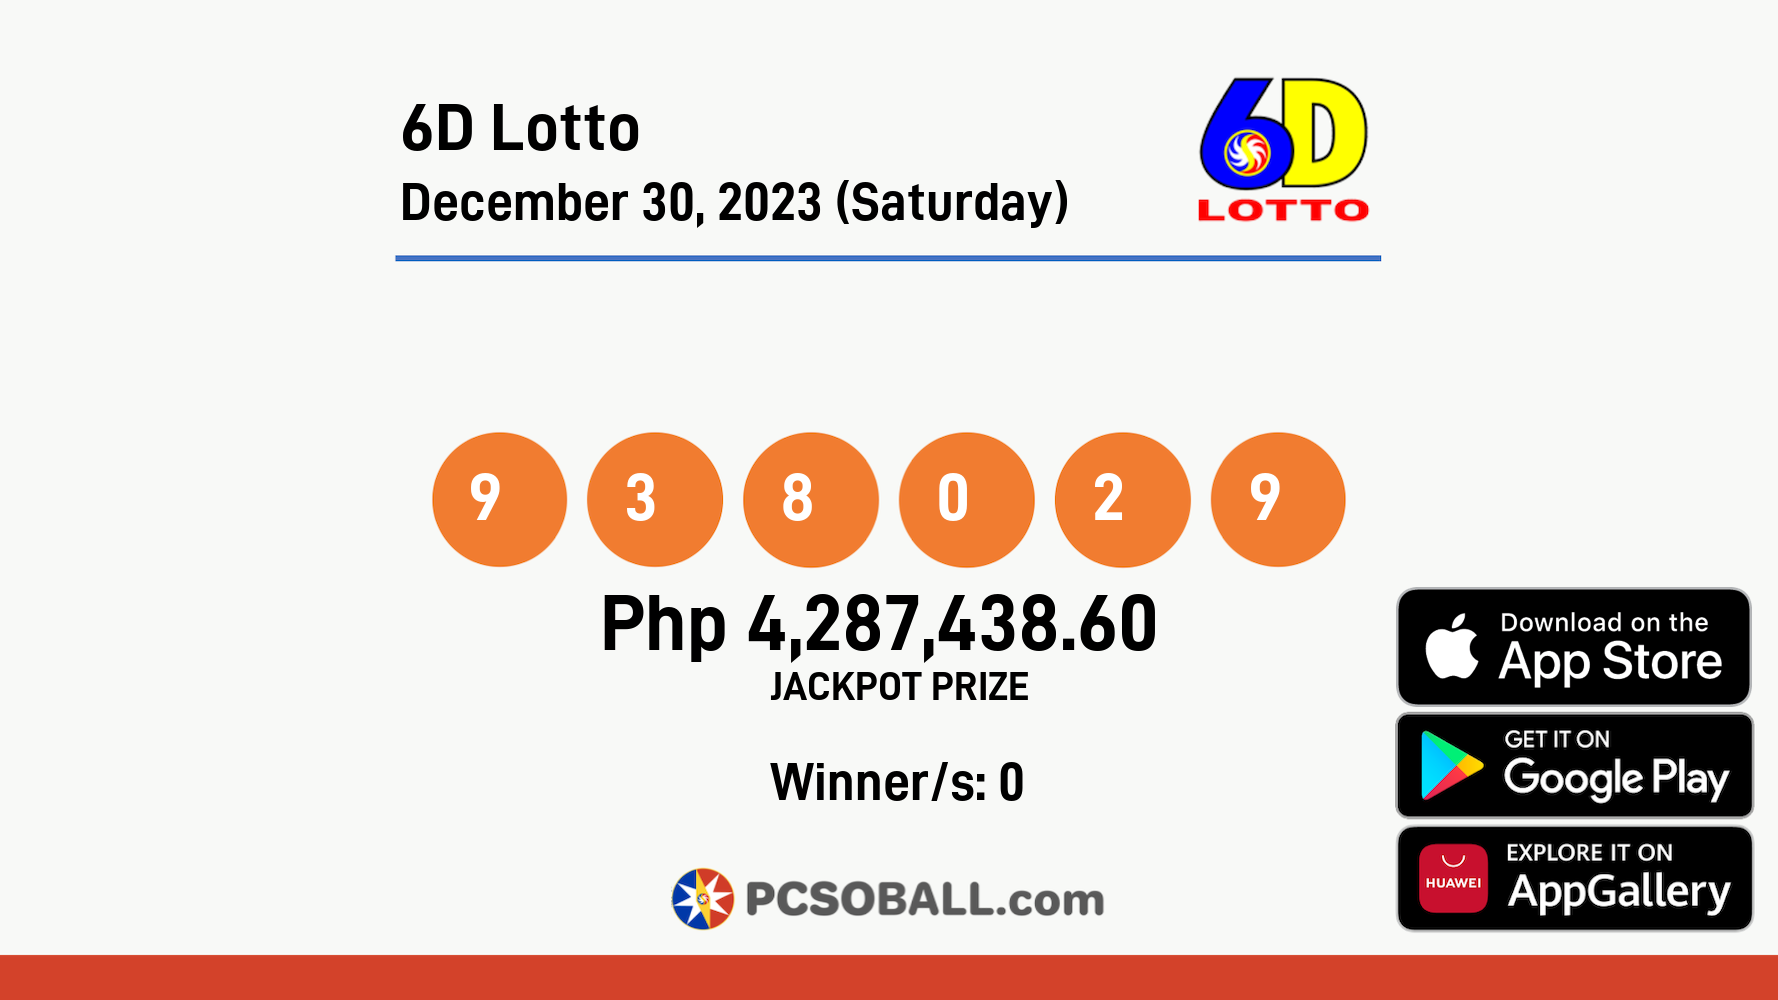 6D Lotto December 30, 2023 (Saturday) Result